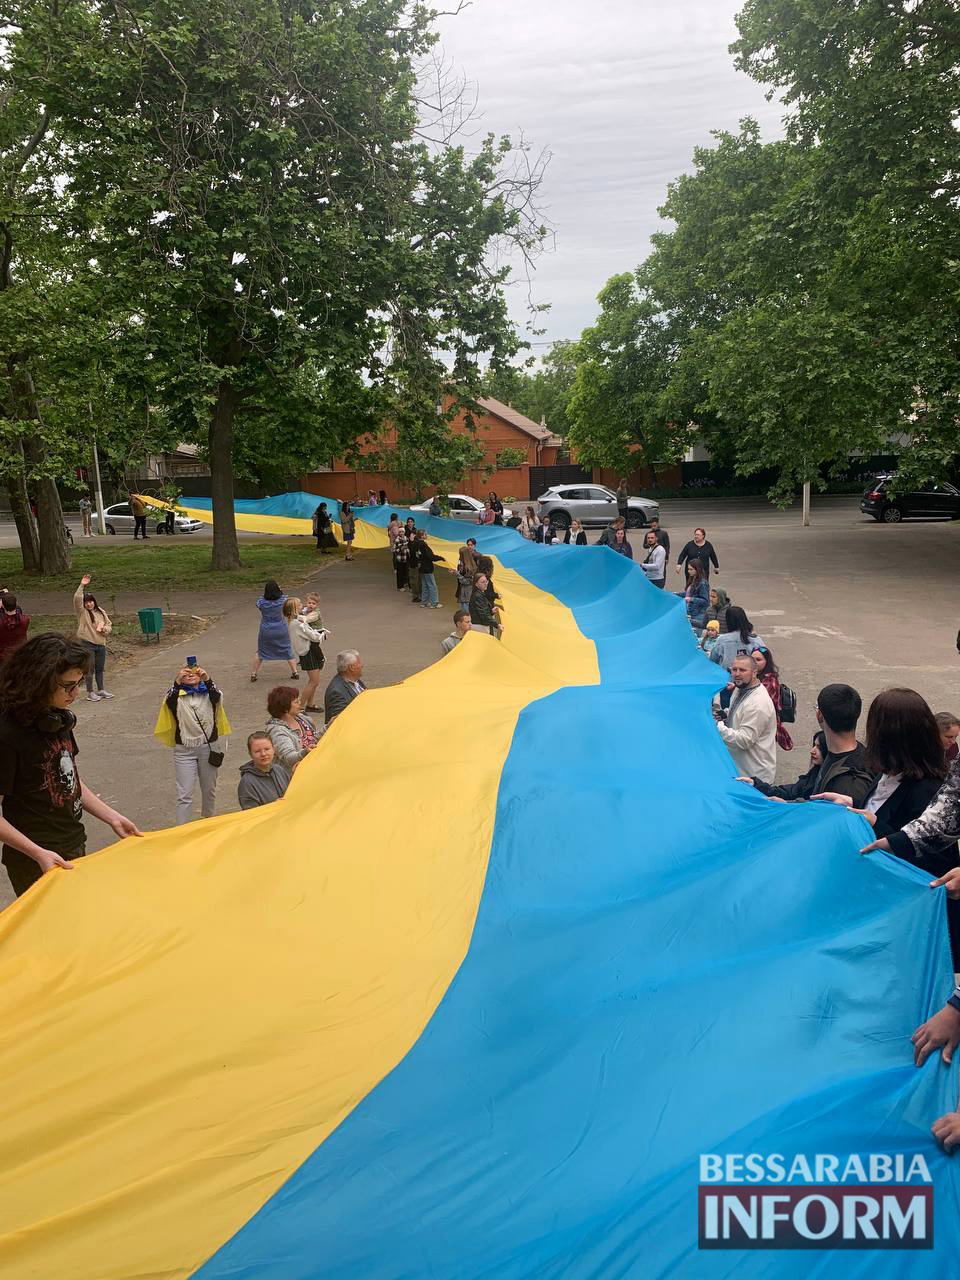 Ізмаїлом пронесли стометровий прапор України: в одних були сльози на очах, а інші прийшли "покрасоваца"